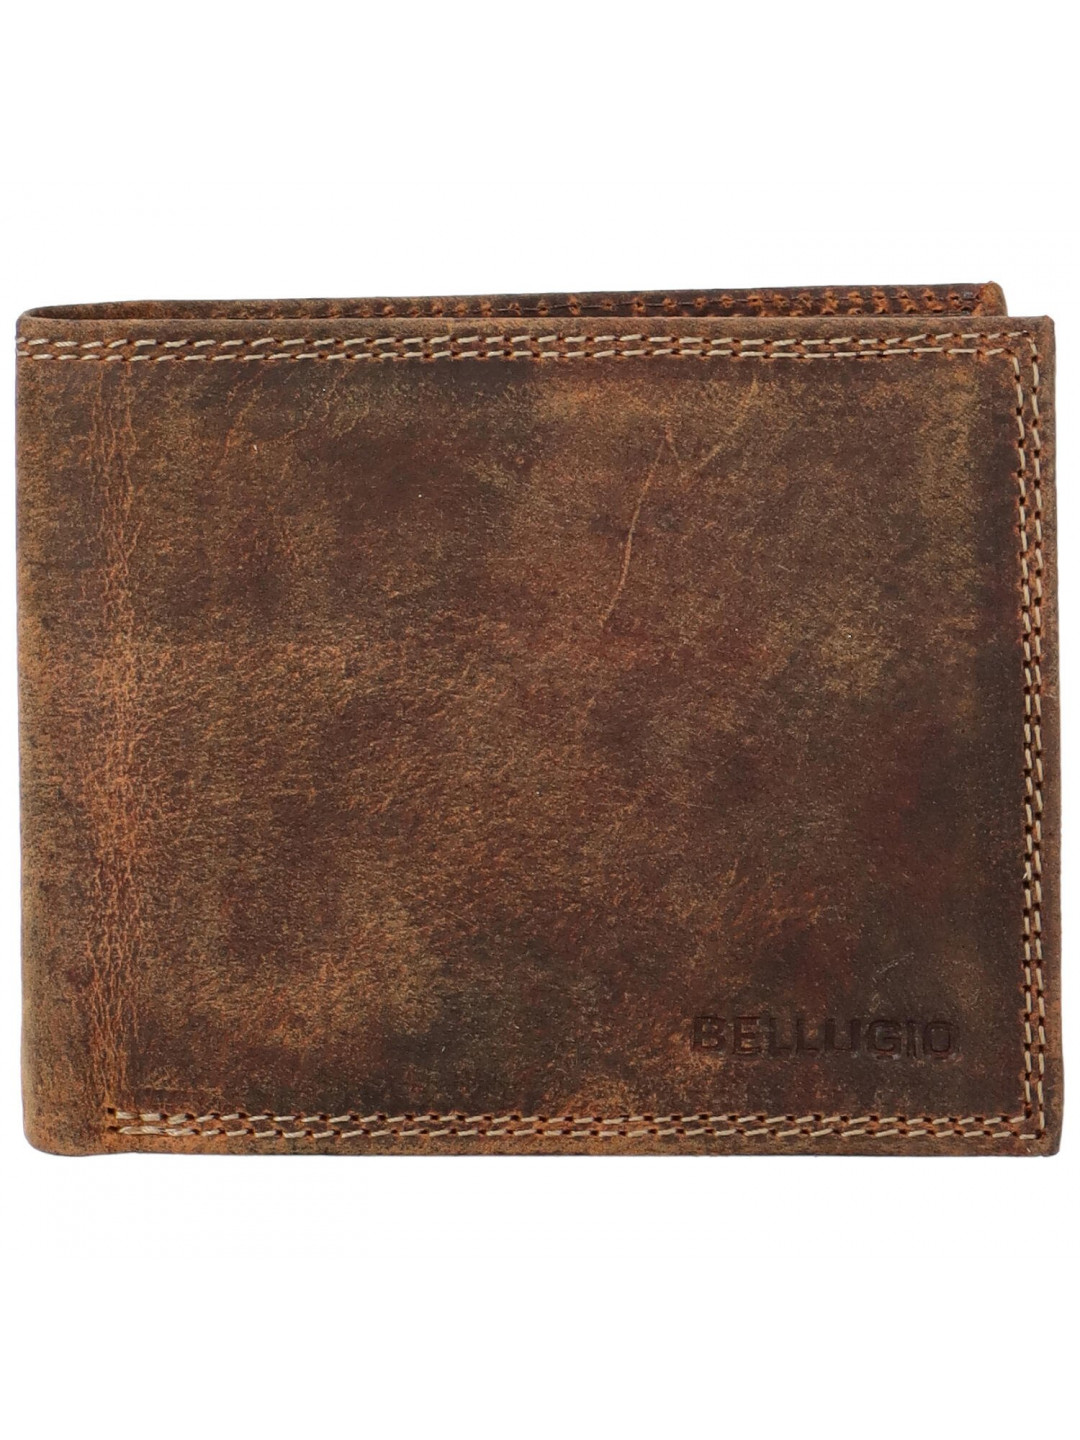 Pánská kožená peněženka Bellugio Silas světle hnědá